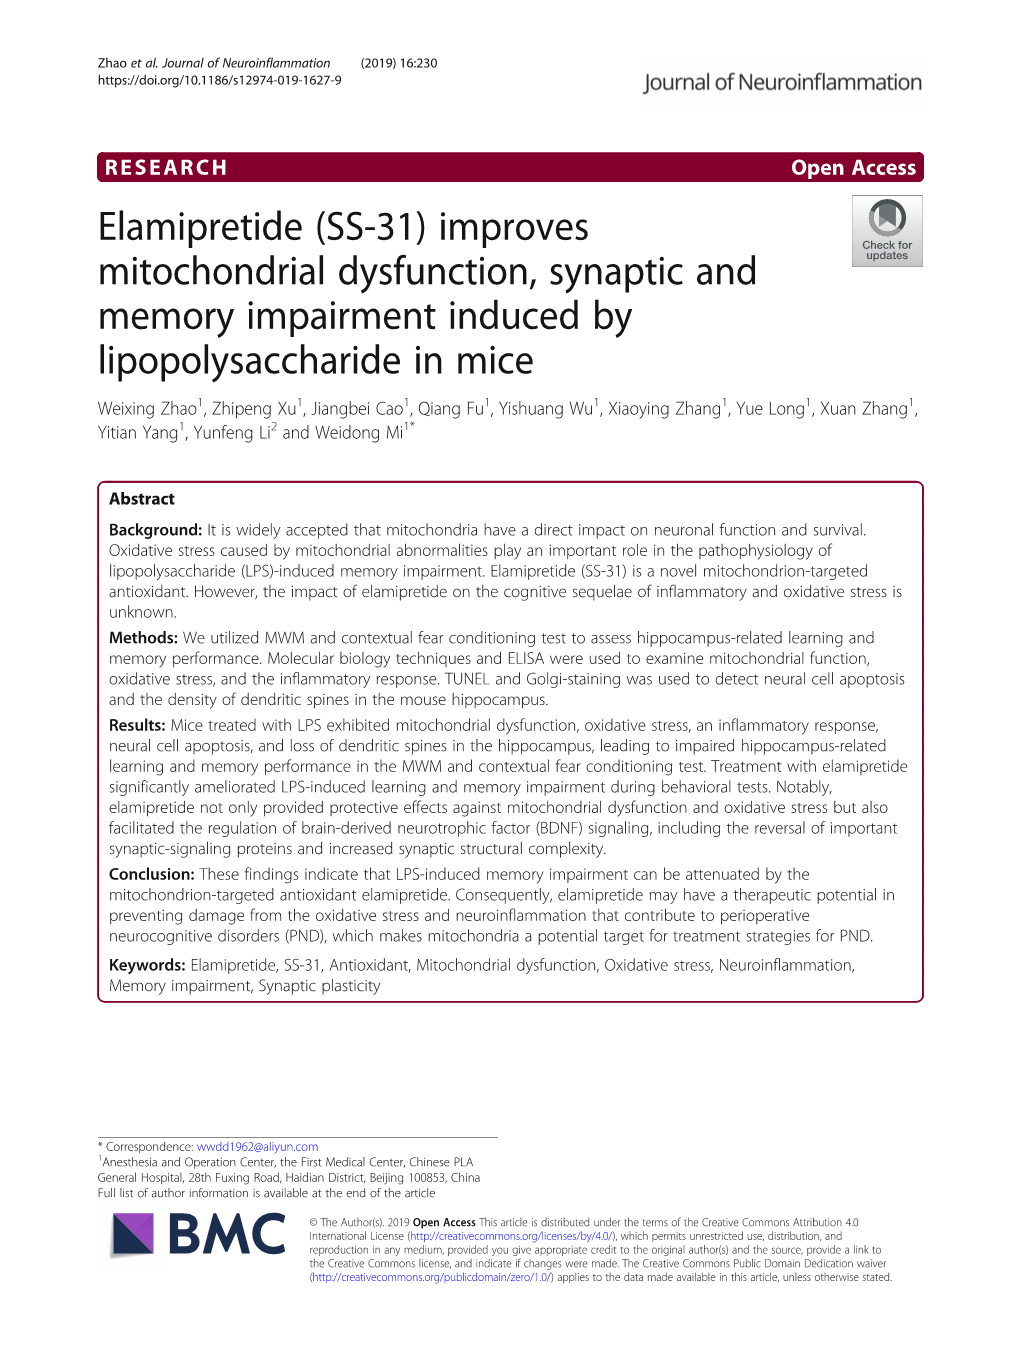 Elamipretide (SS-31)